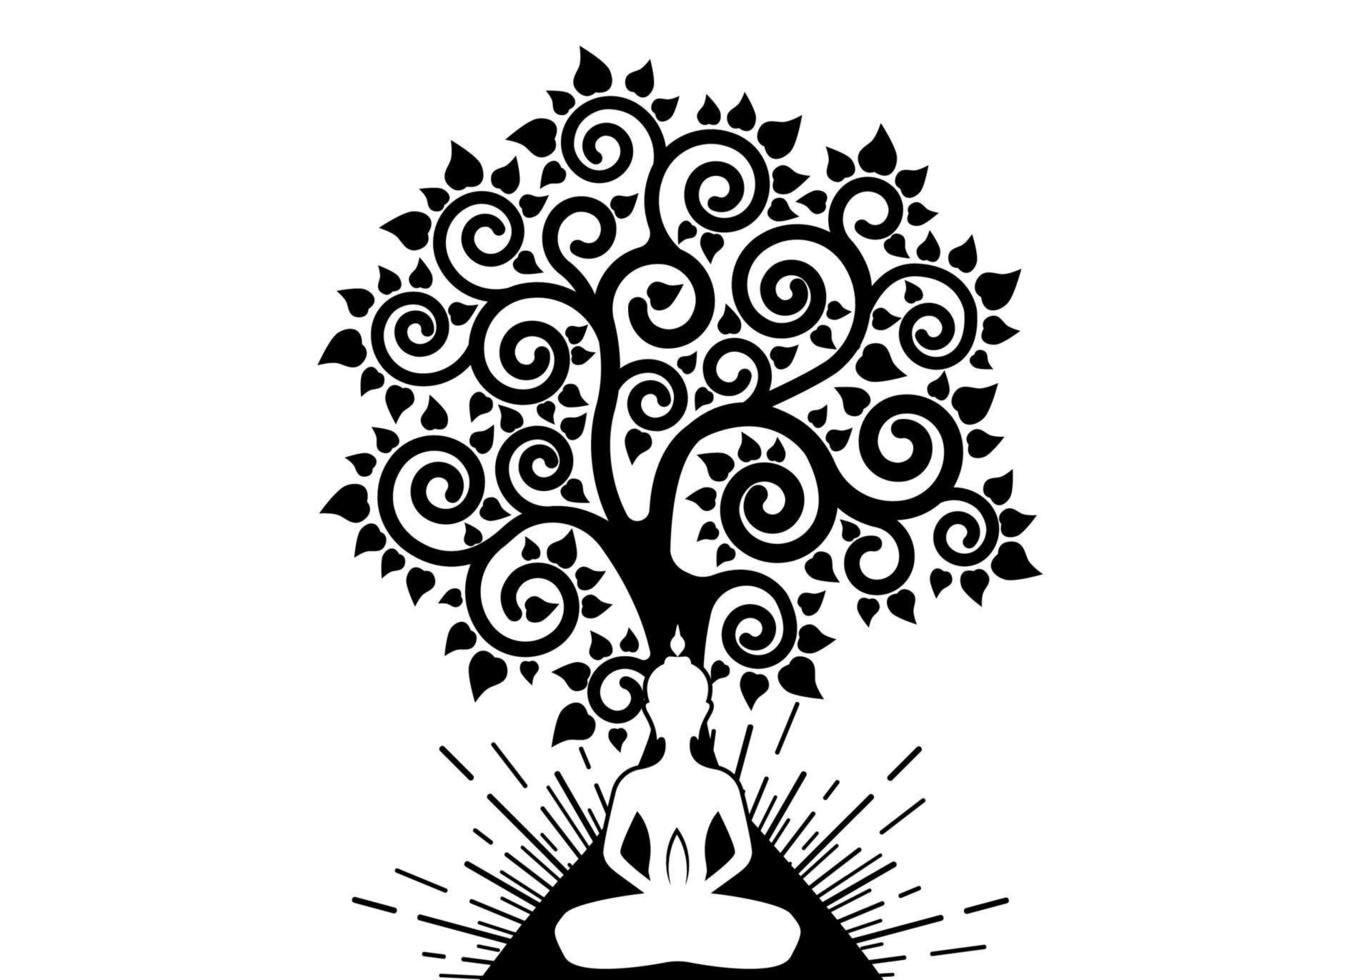 día de visakha puja, buda meditando y árbol bodhi en plantilla de logotipo de loto sagrado. árbol sagrado, ficus religiosa, concepto de árbol de la vida. vector aislado sobre fondo blanco